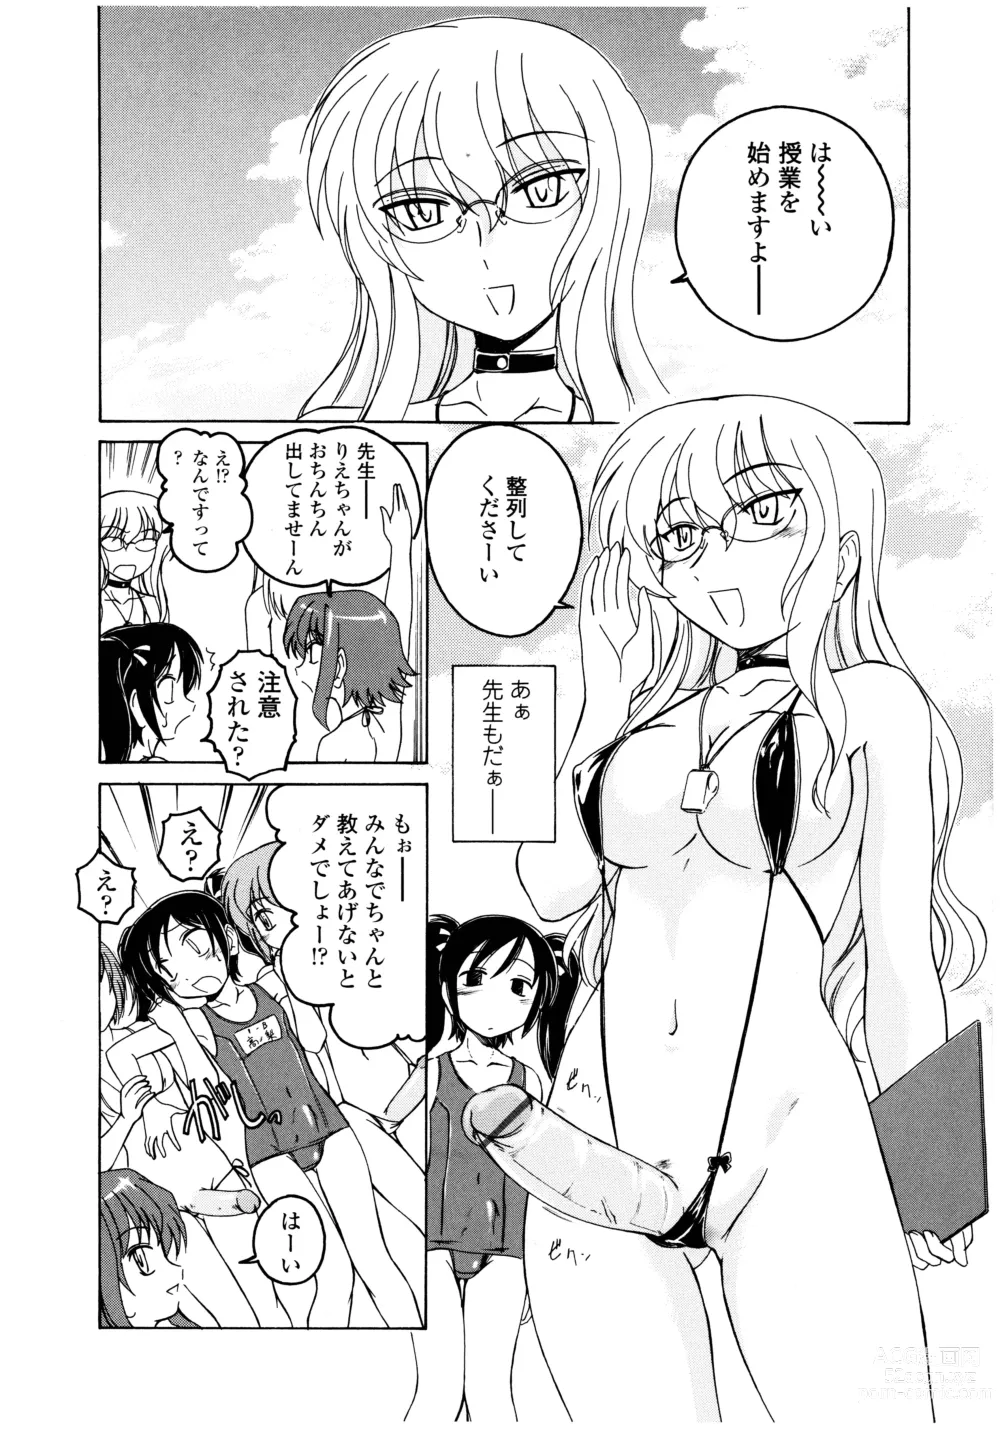 Page 10 of manga Futanari Yesterday